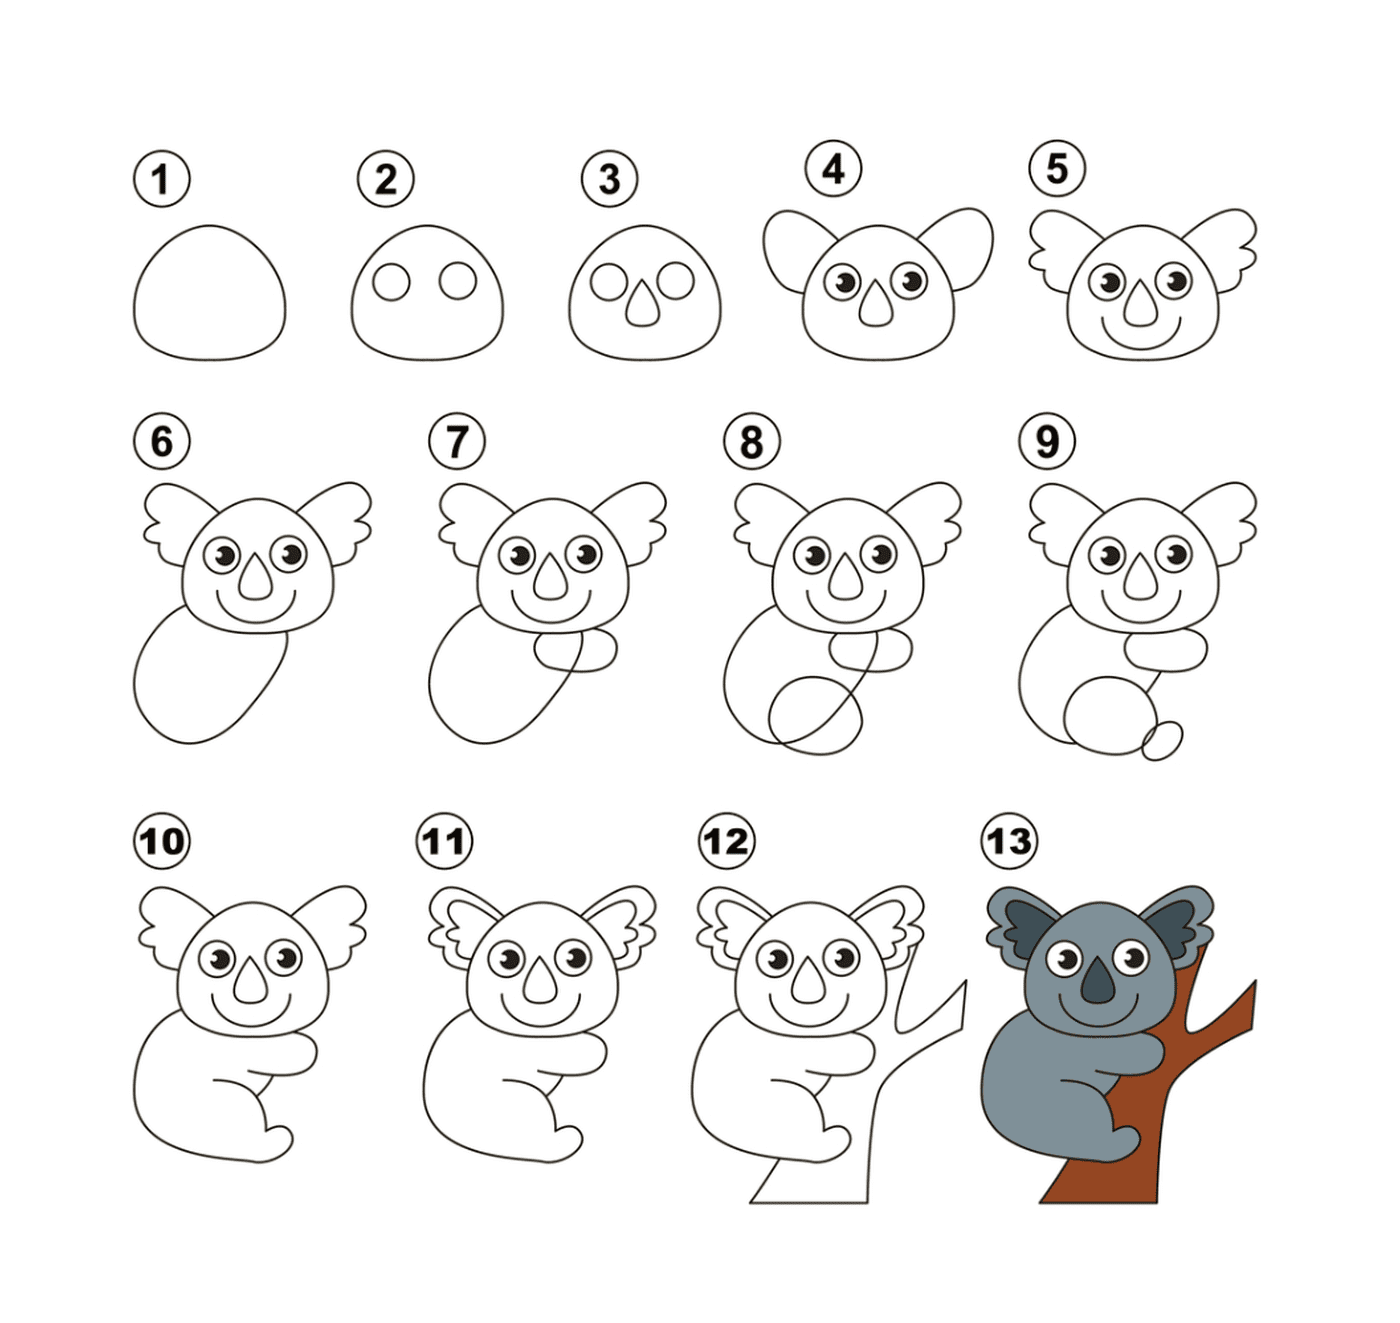   Comment dessiner un koala facilement 